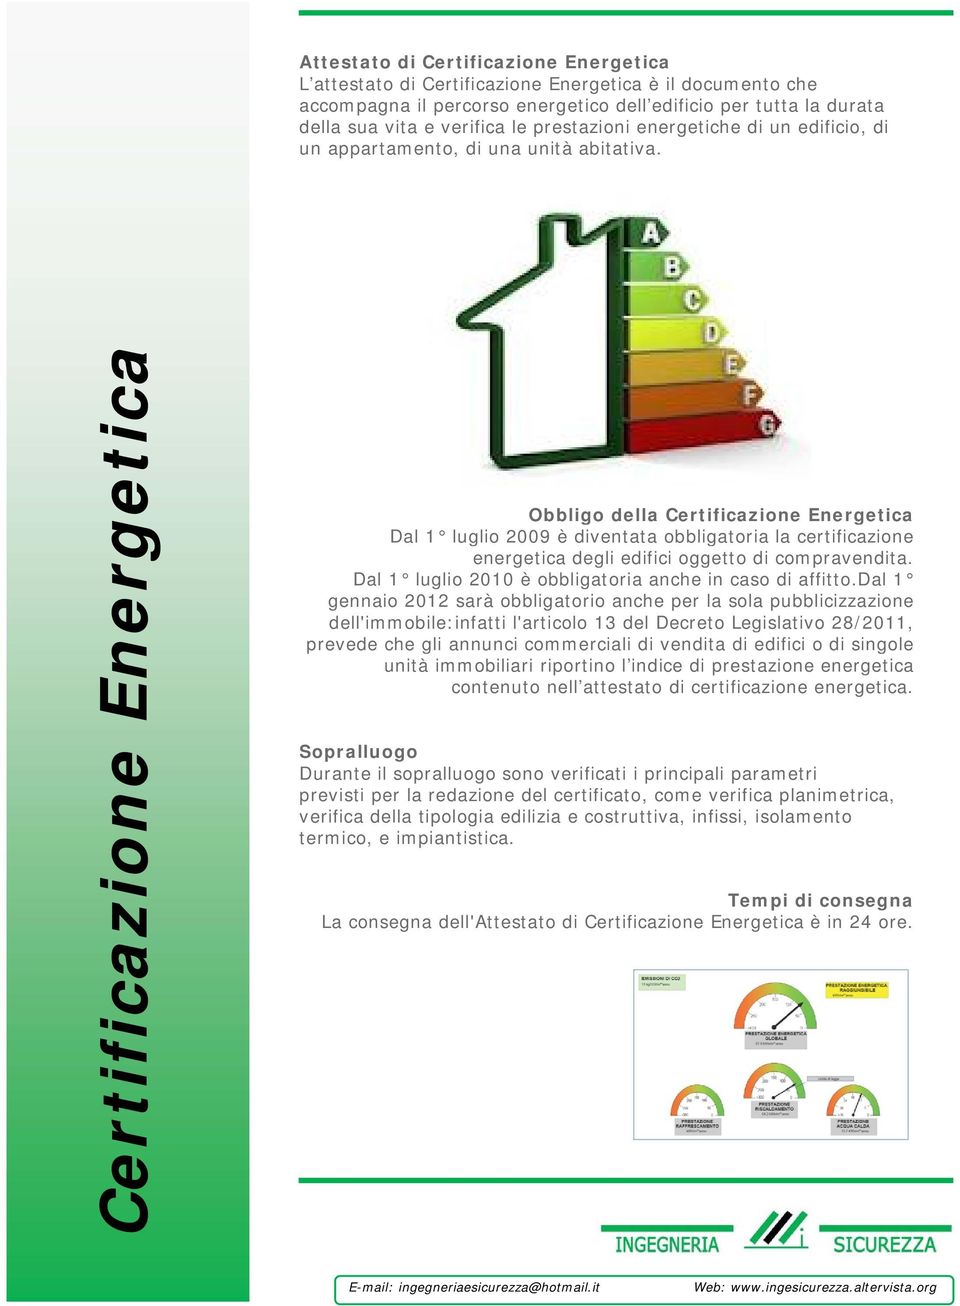 Certificazione Energetica Obbligo della Certificazione Energetica Dal 1 luglio 2009 è diventata obbligatoria la certificazione energetica degli edifici oggetto di compravendita.